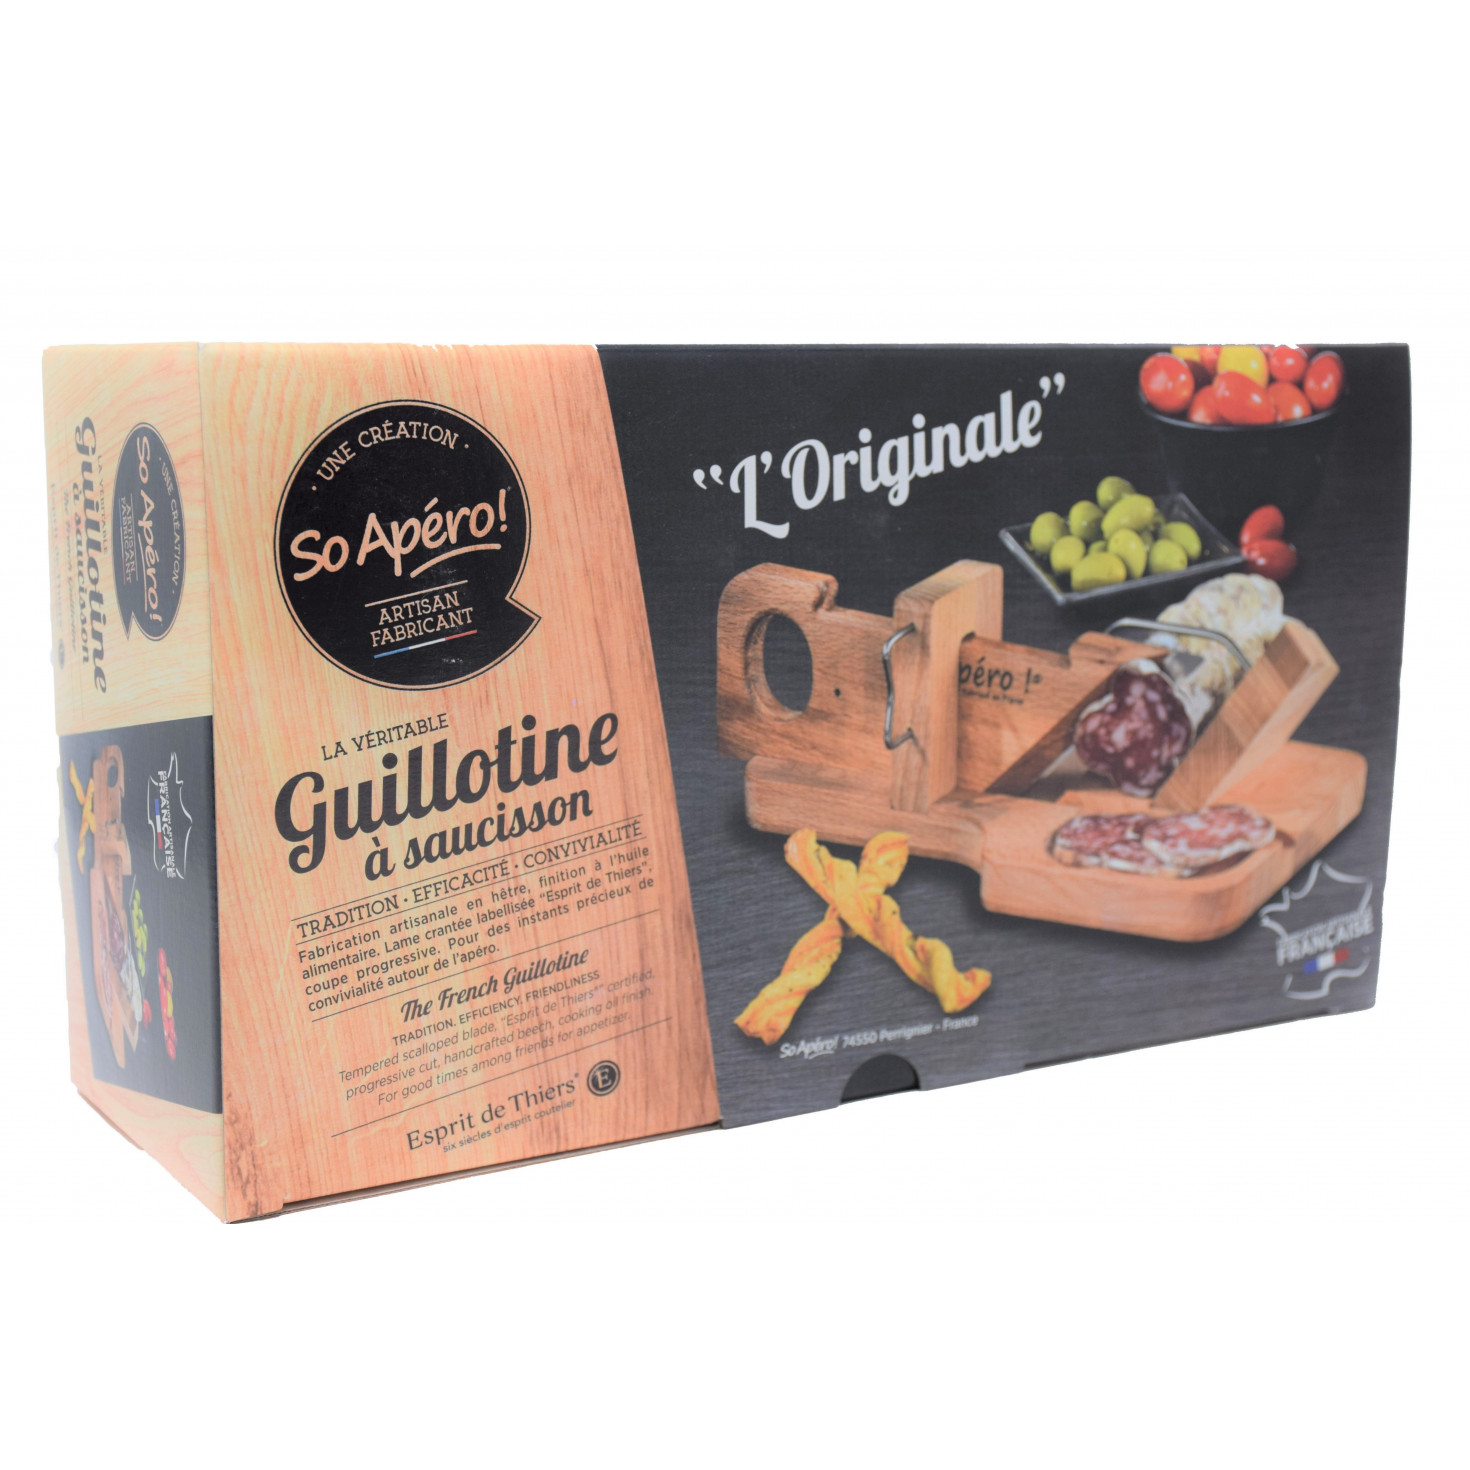 AperiCoupe Guillotine A Saucisson 30x18,5x12,5cm – The